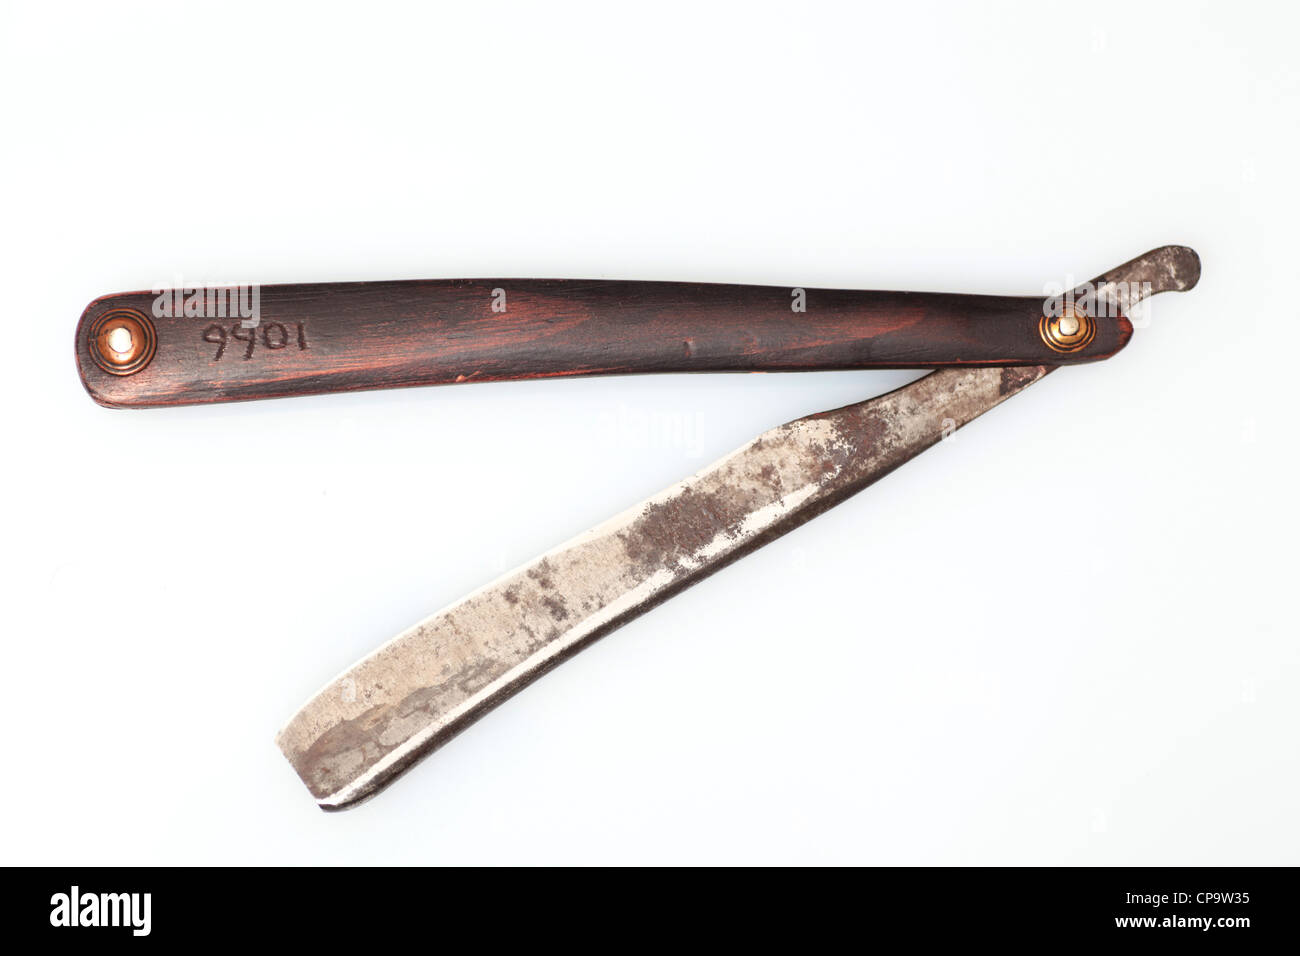 Antique wood handled straight edge razor c. 1800 against white background Stock Photo